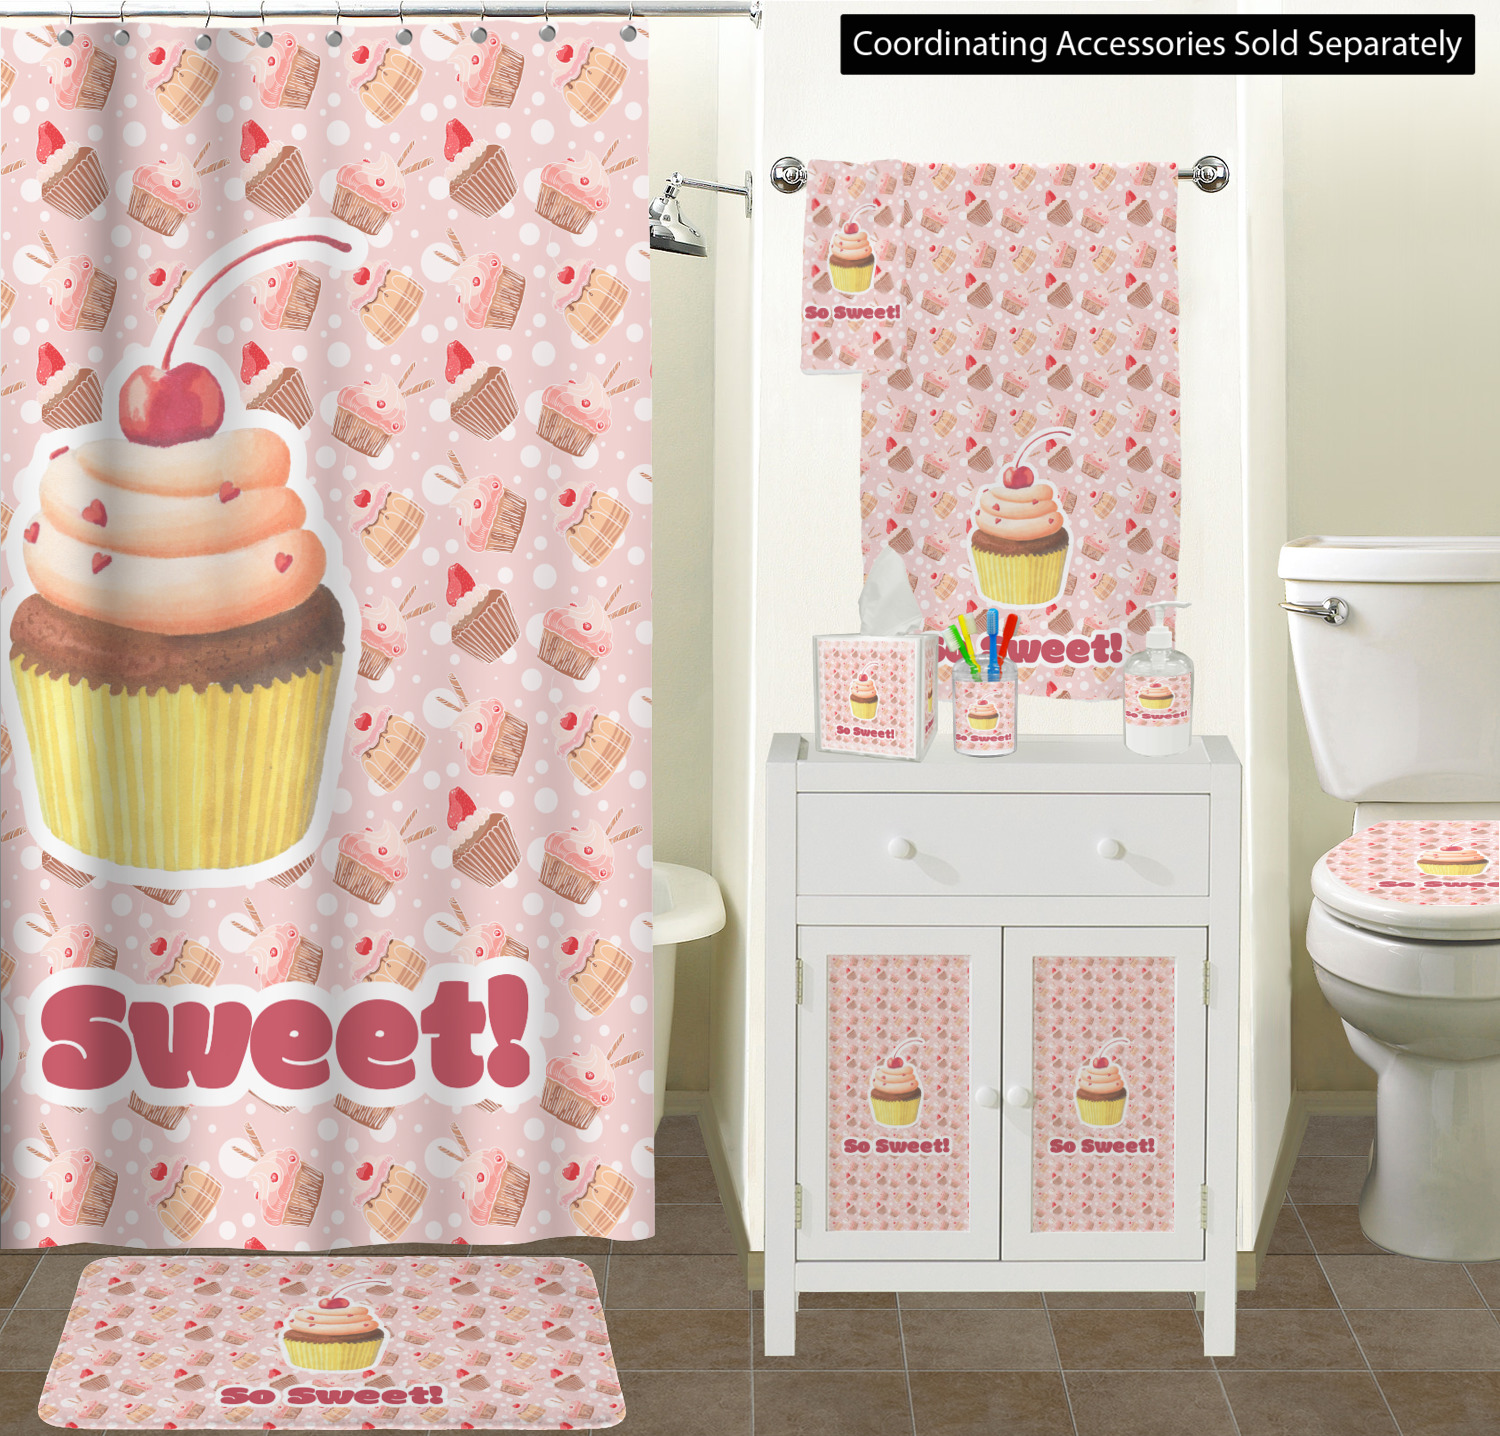 Toilet Theme Cake | Order Toilet Seat Cake Online | YummyCake